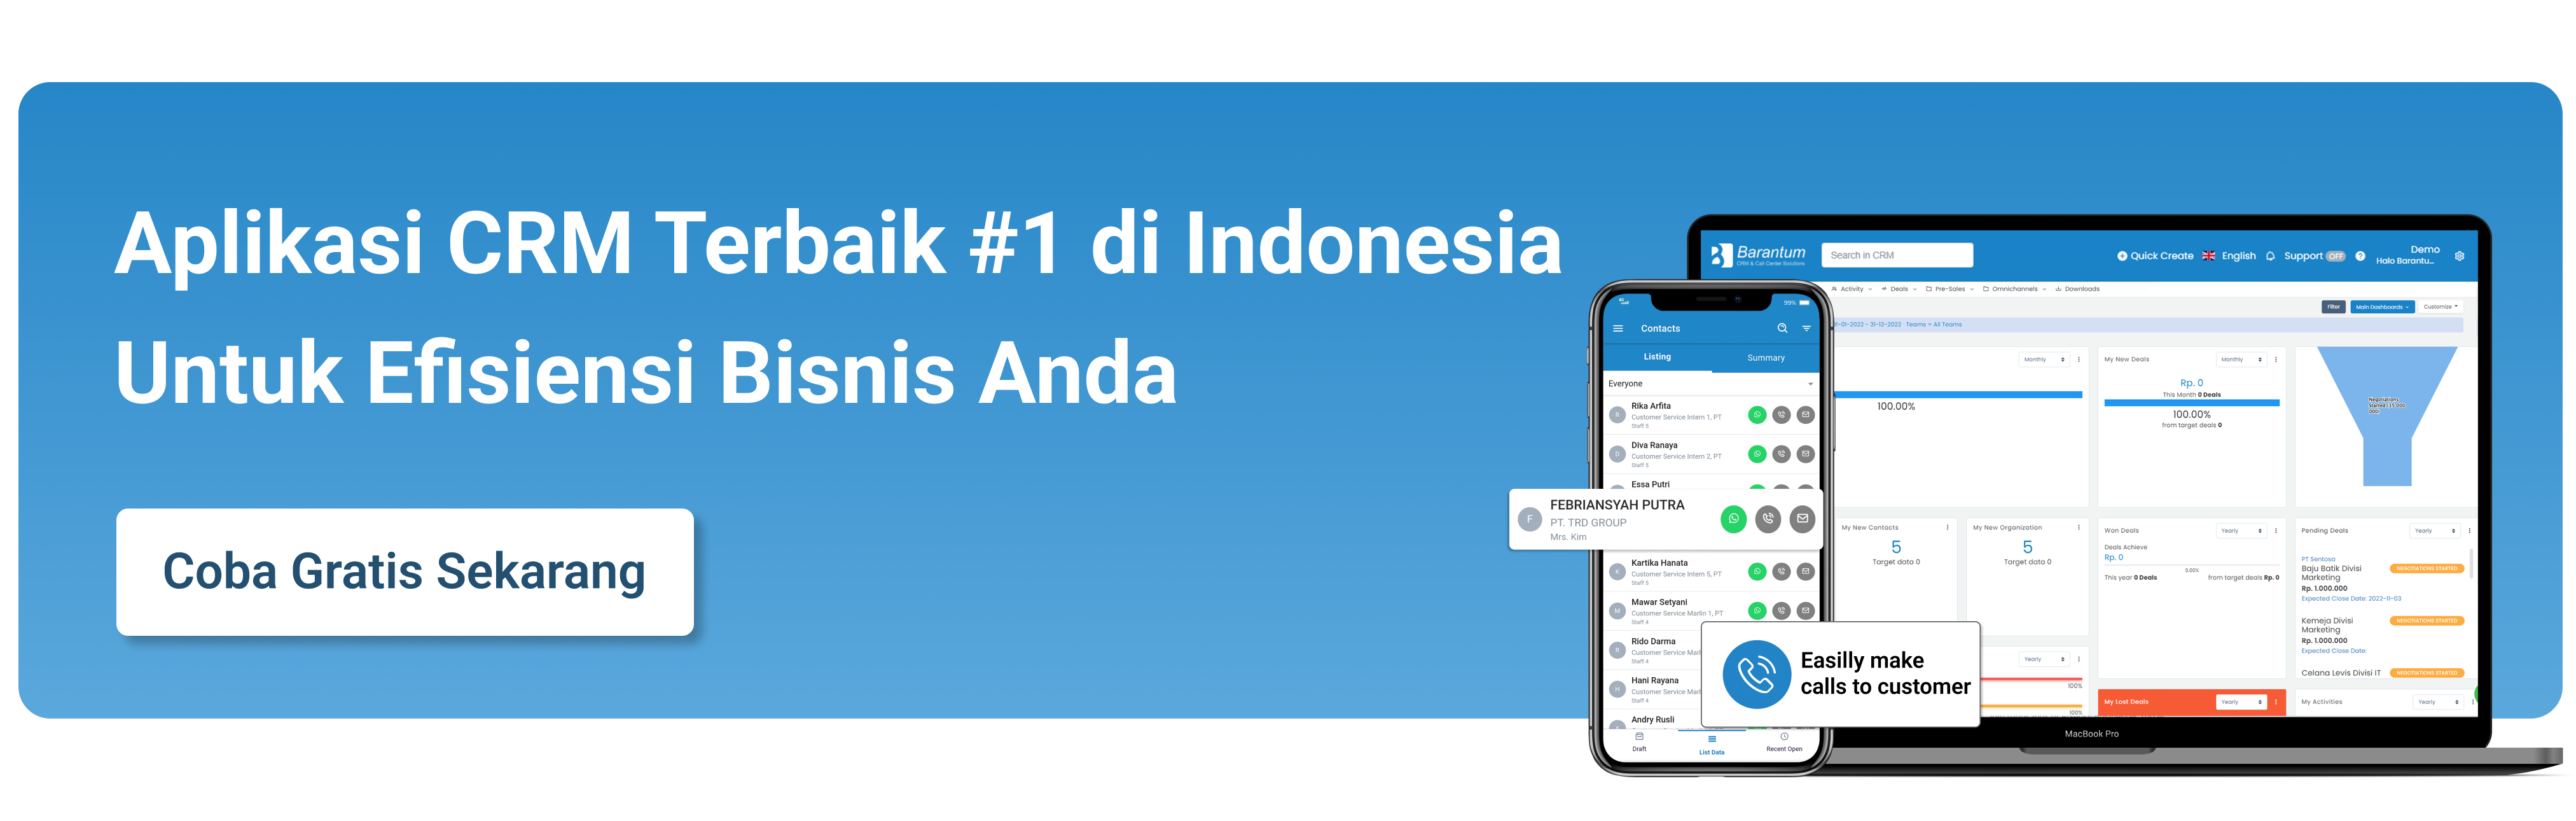 Barantum CRM - Aplikasi CRM Terbaik di Indonesia